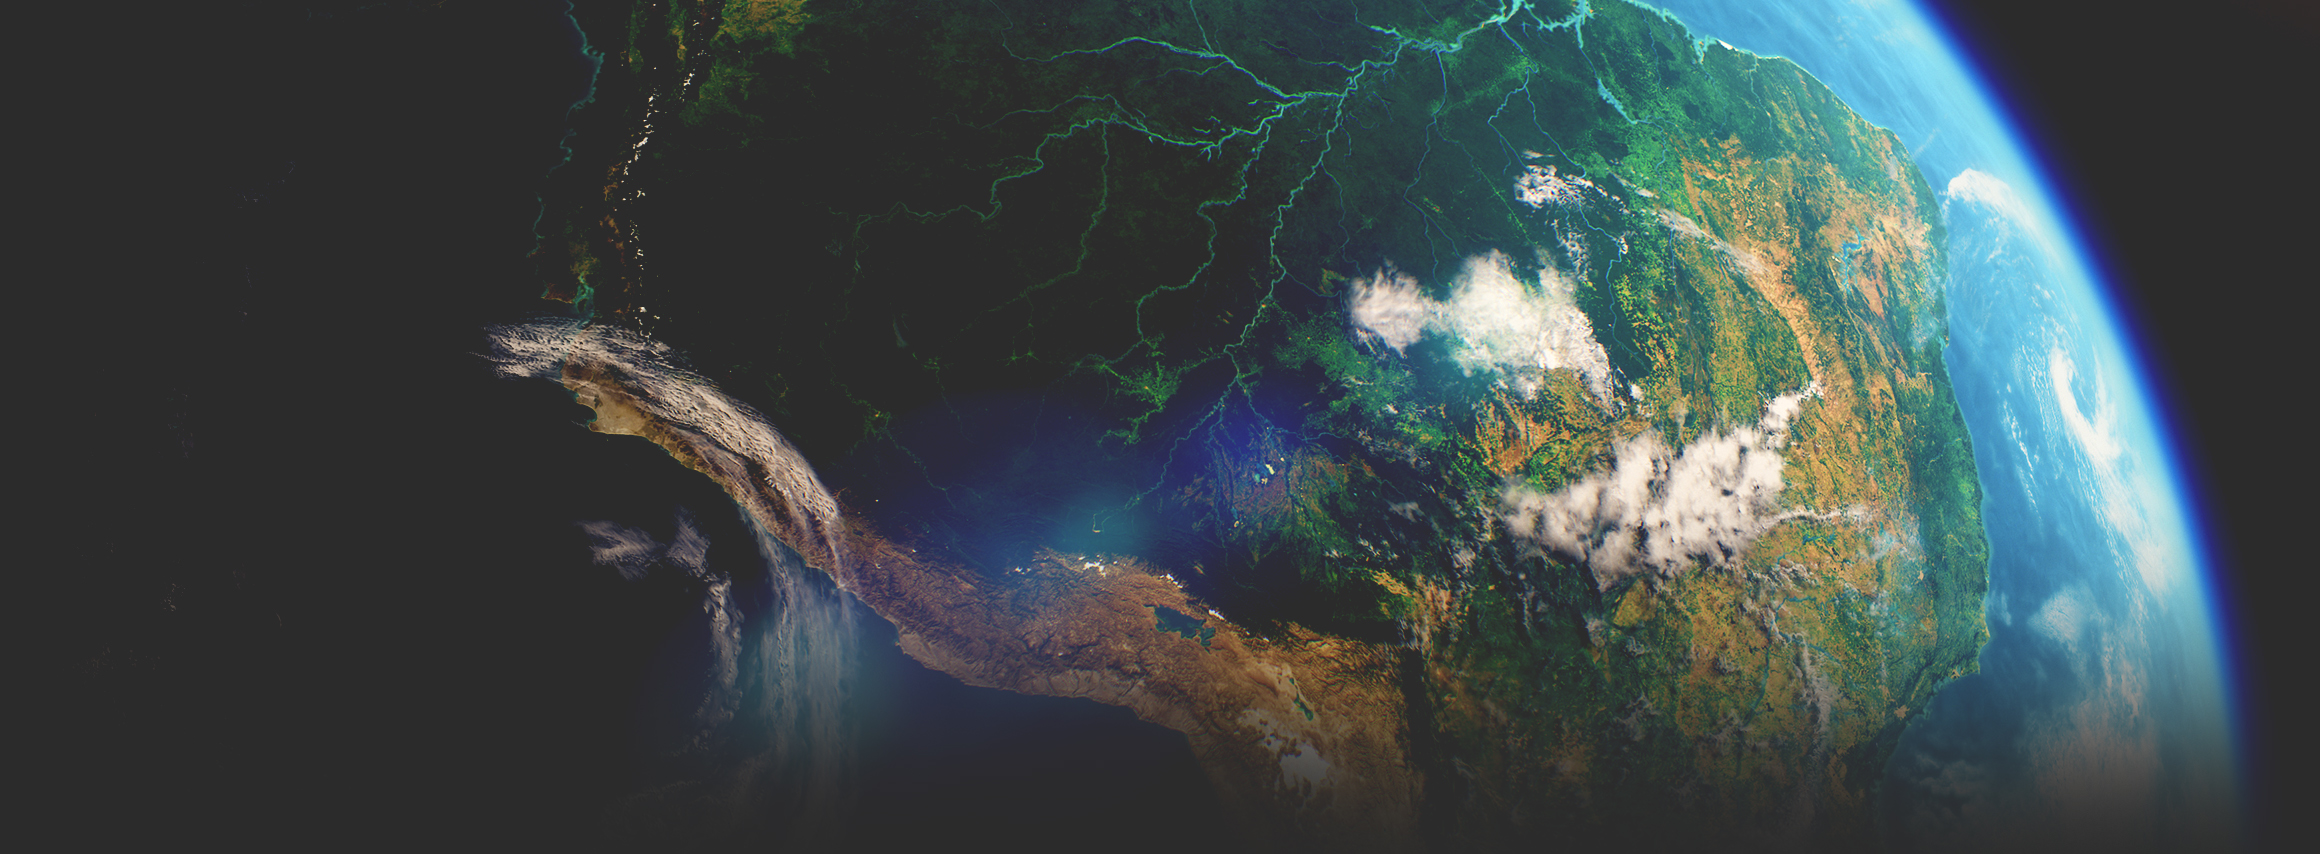 Las imágenes satelitales tomadas desde el espacio muestran un continente verde con un río que lo atraviesa, el océano y la atmósfera.